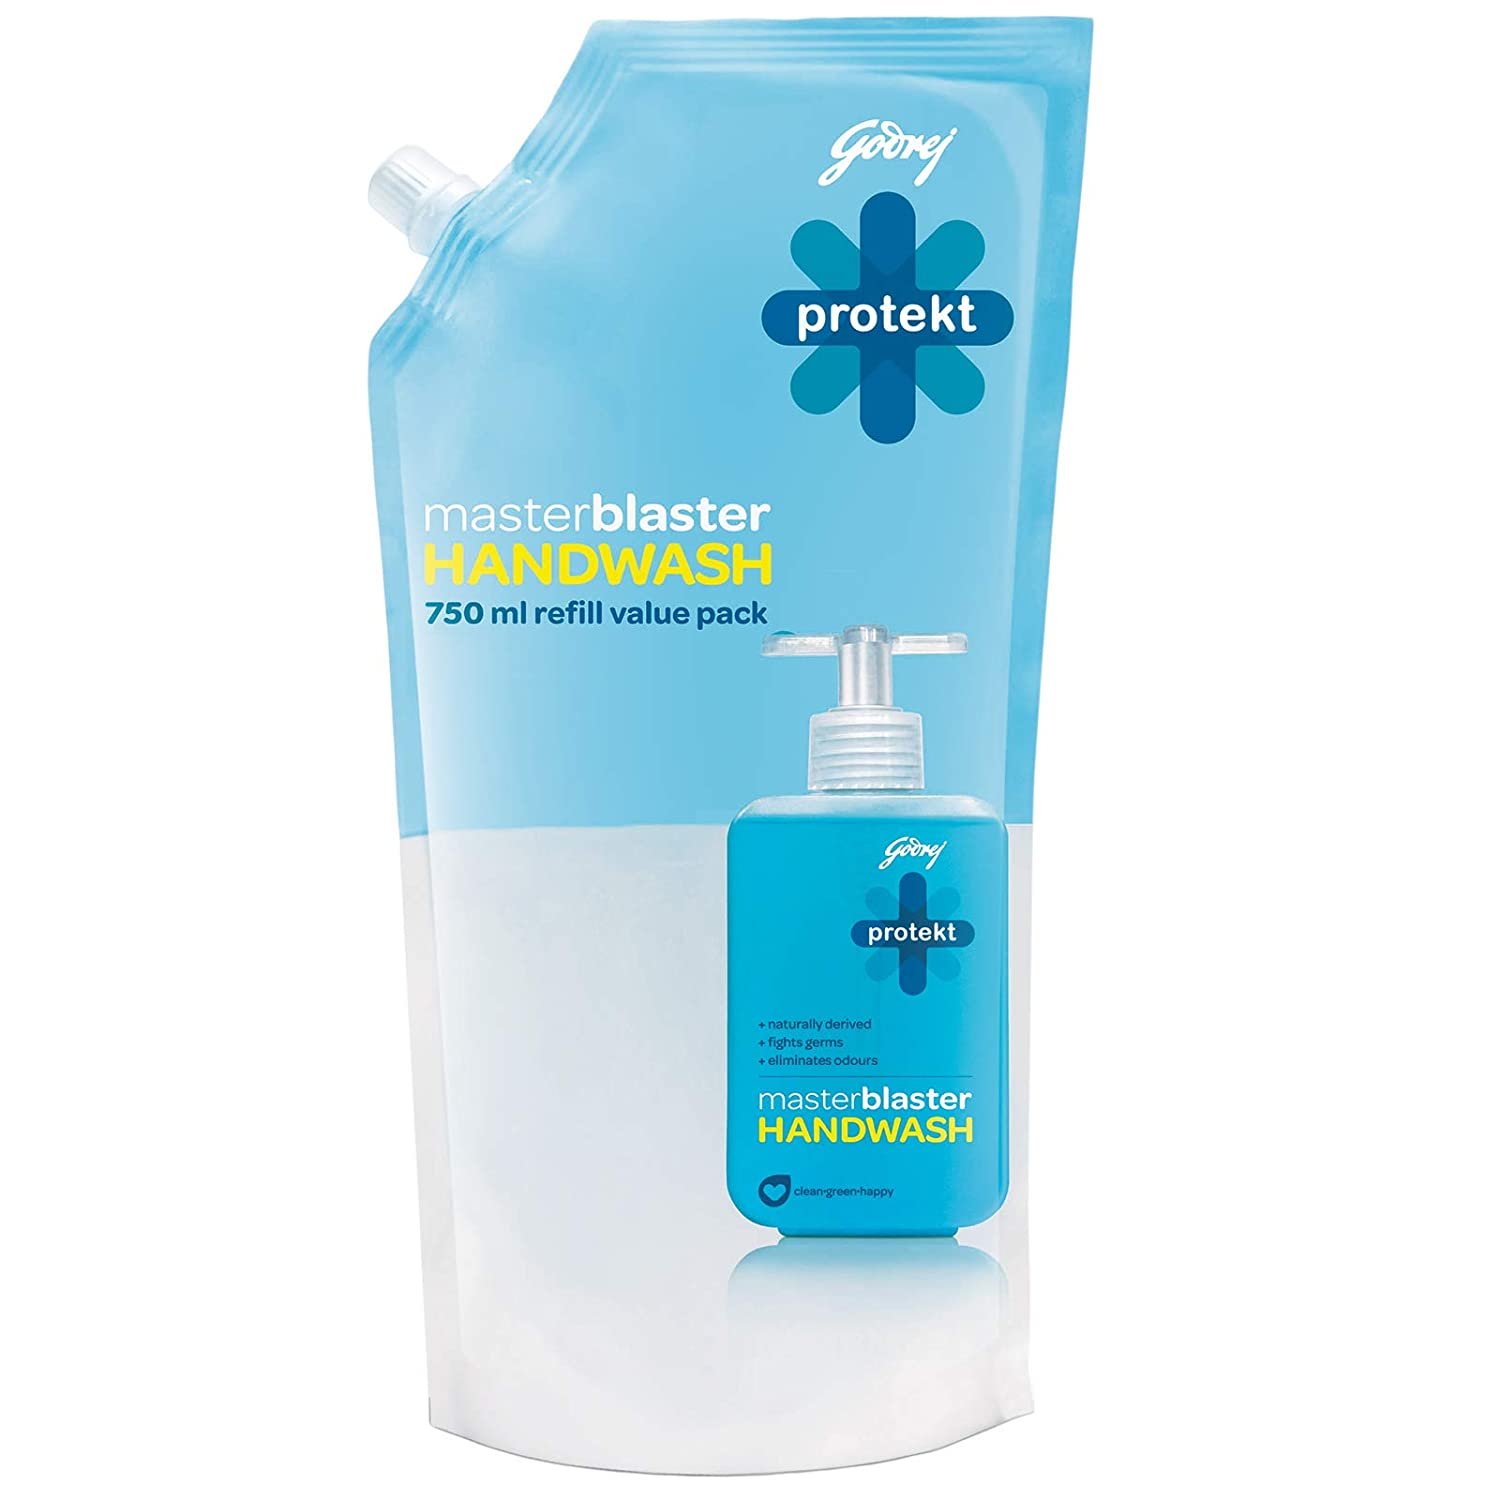 Godrej Protekt masterblaster Handwash (Refill Value Pack )180 ml